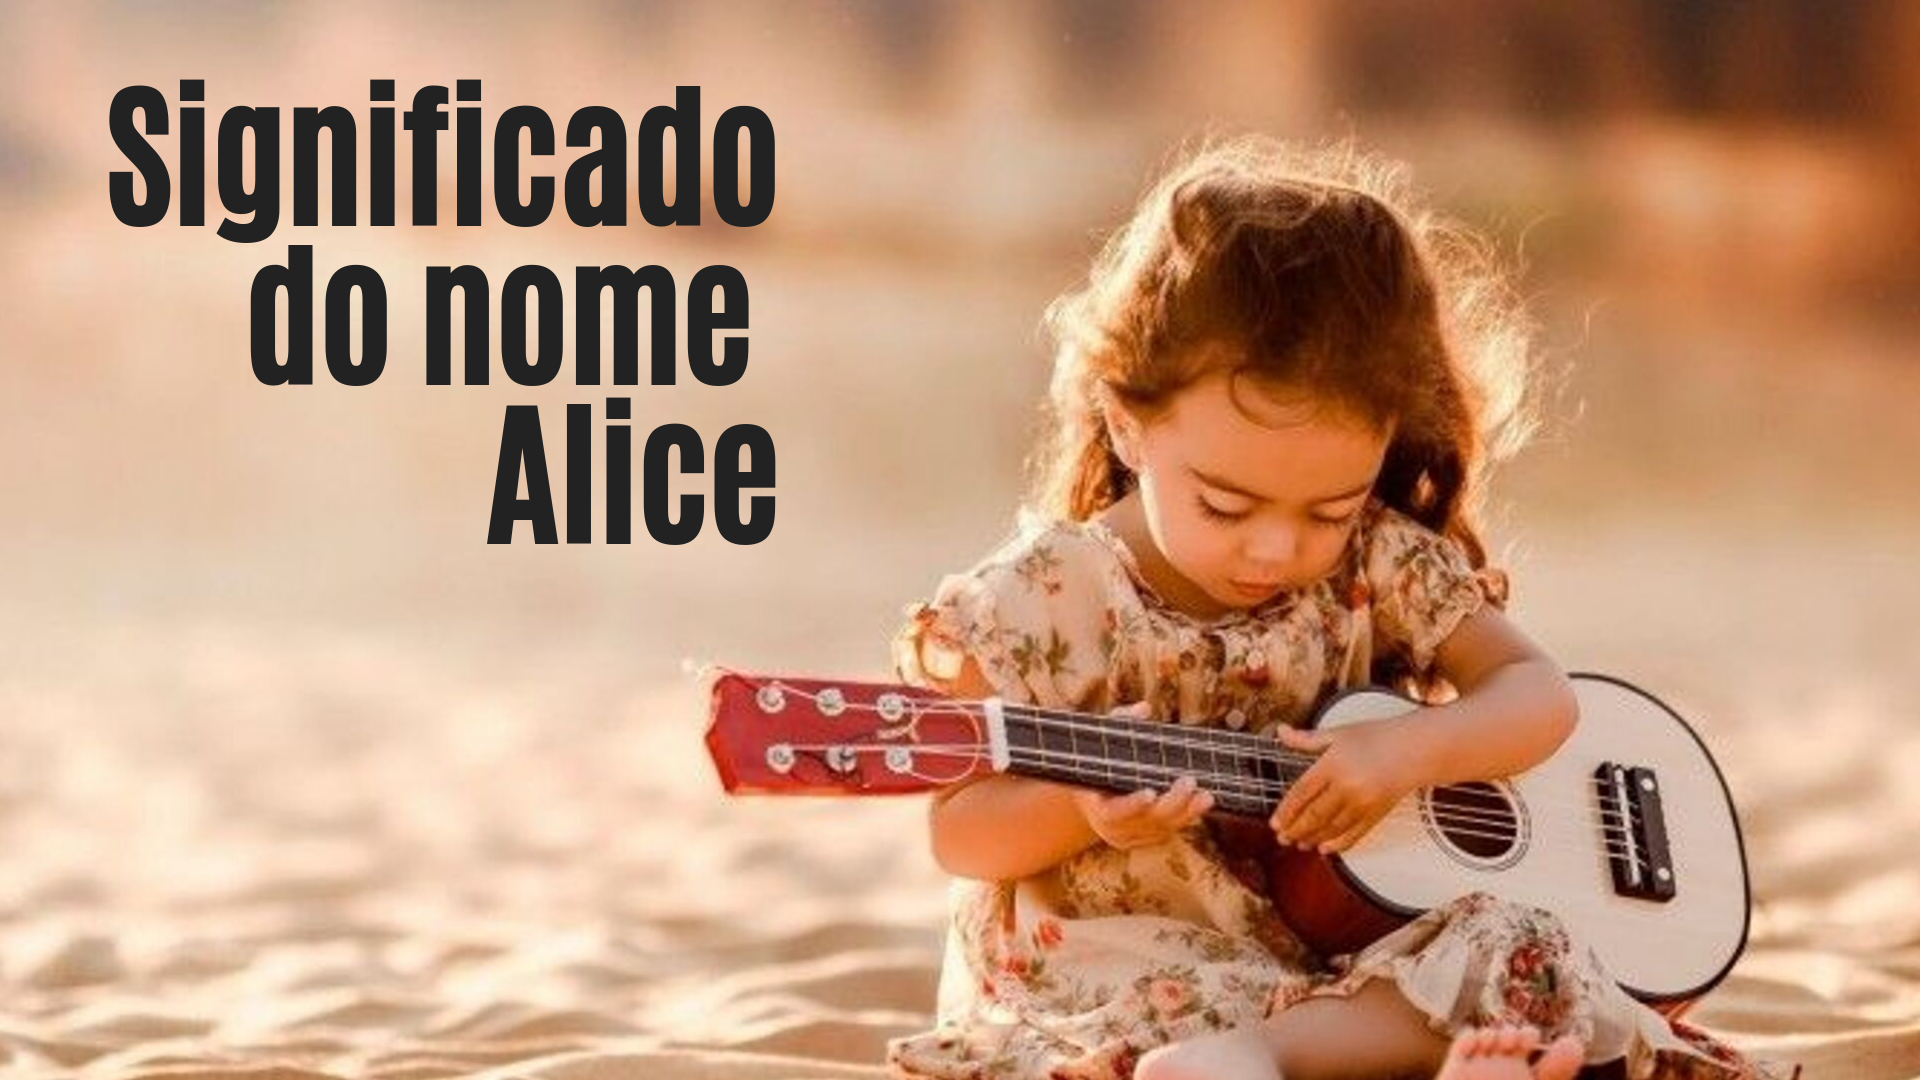 menina tocando violão foto escrita significado do nome Alice